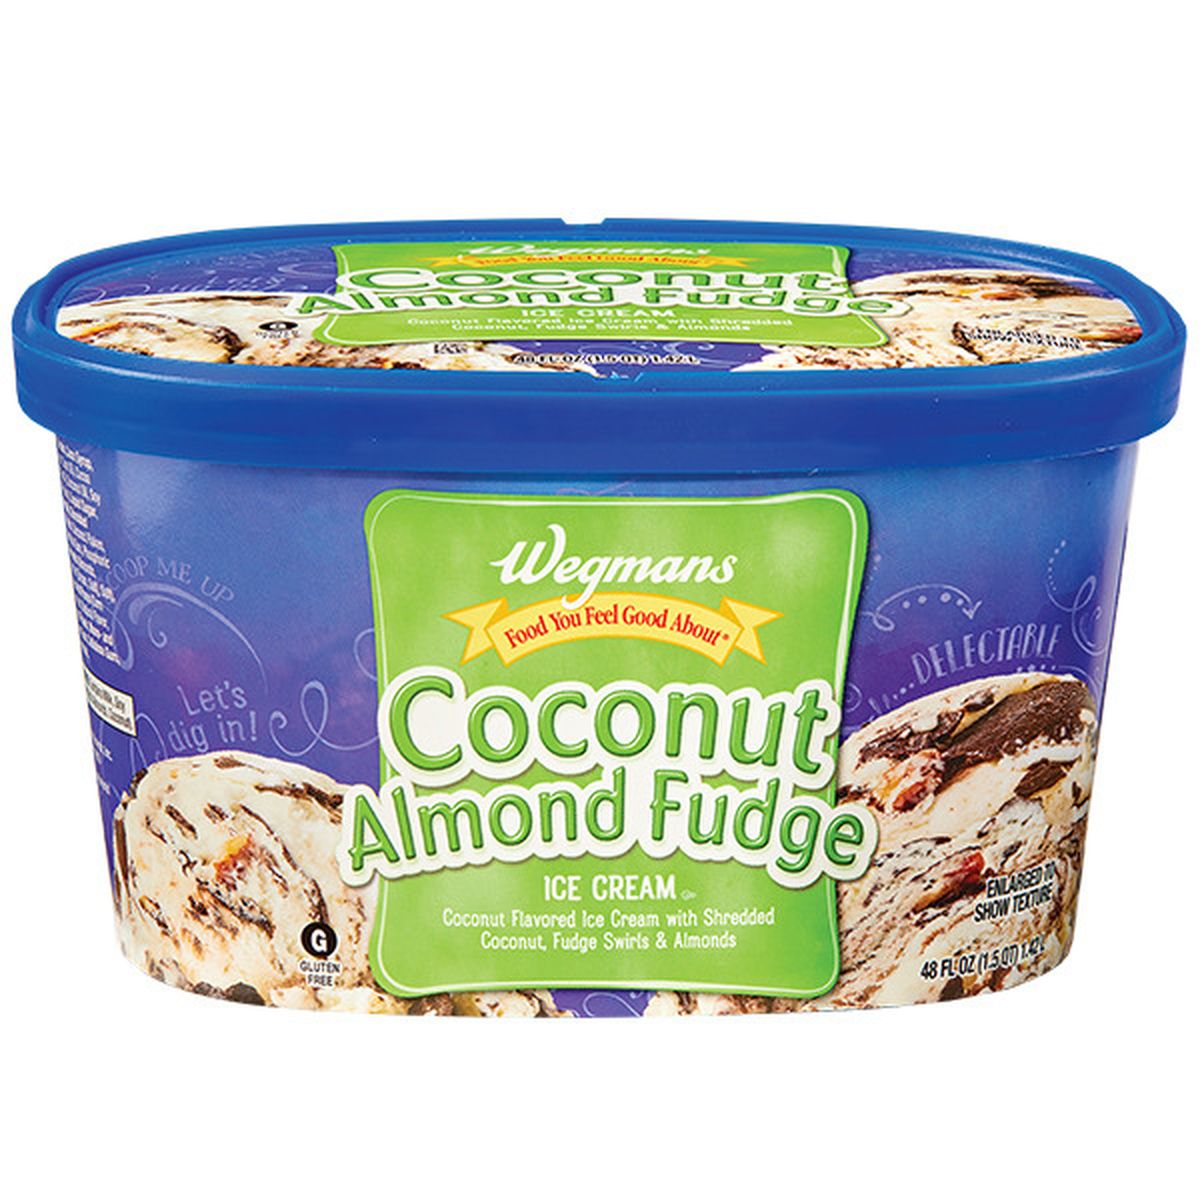 Calories in Wegmans Coconut Almond Fudge Ice Cream